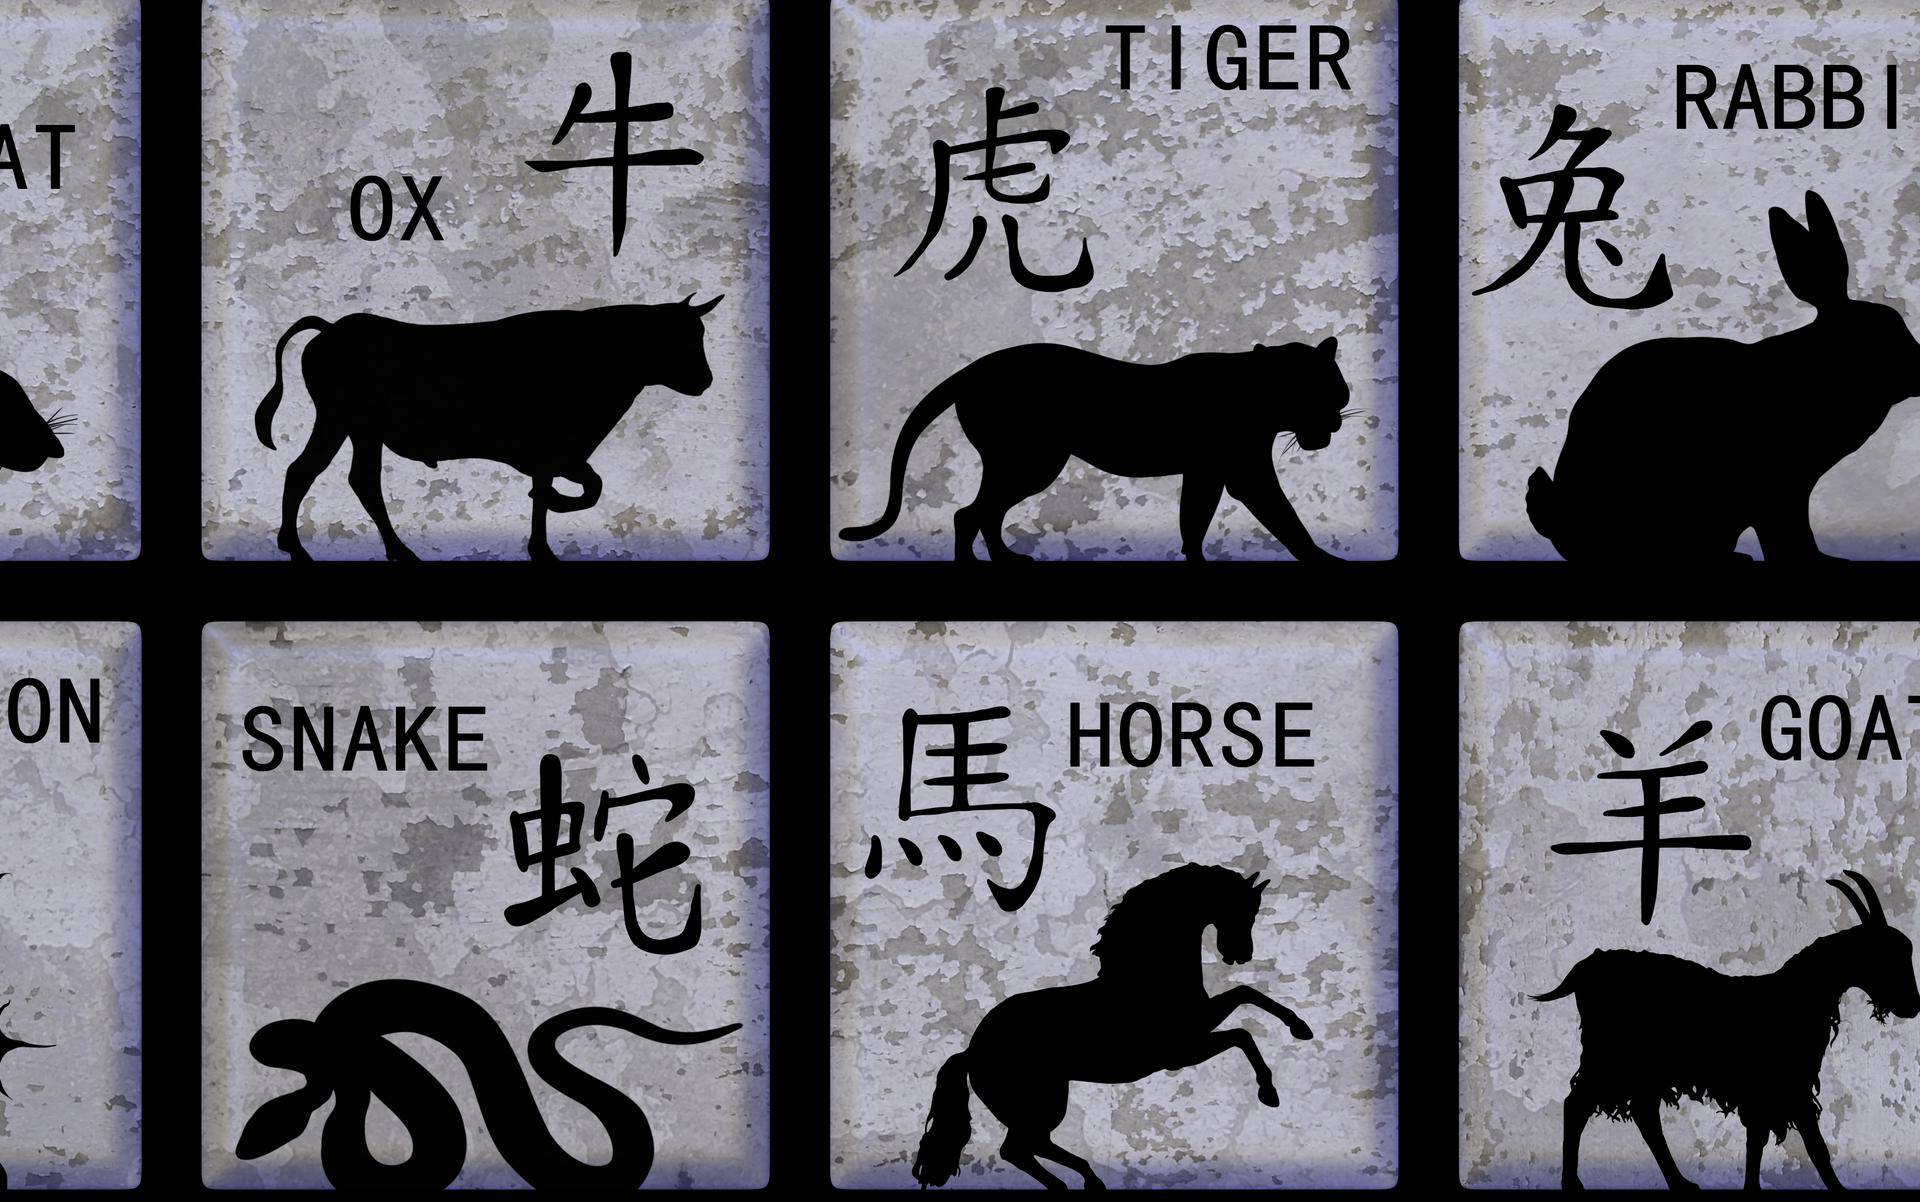 Najsretniji dan za svaki kineski horoskopski znak - koji je tvoj?